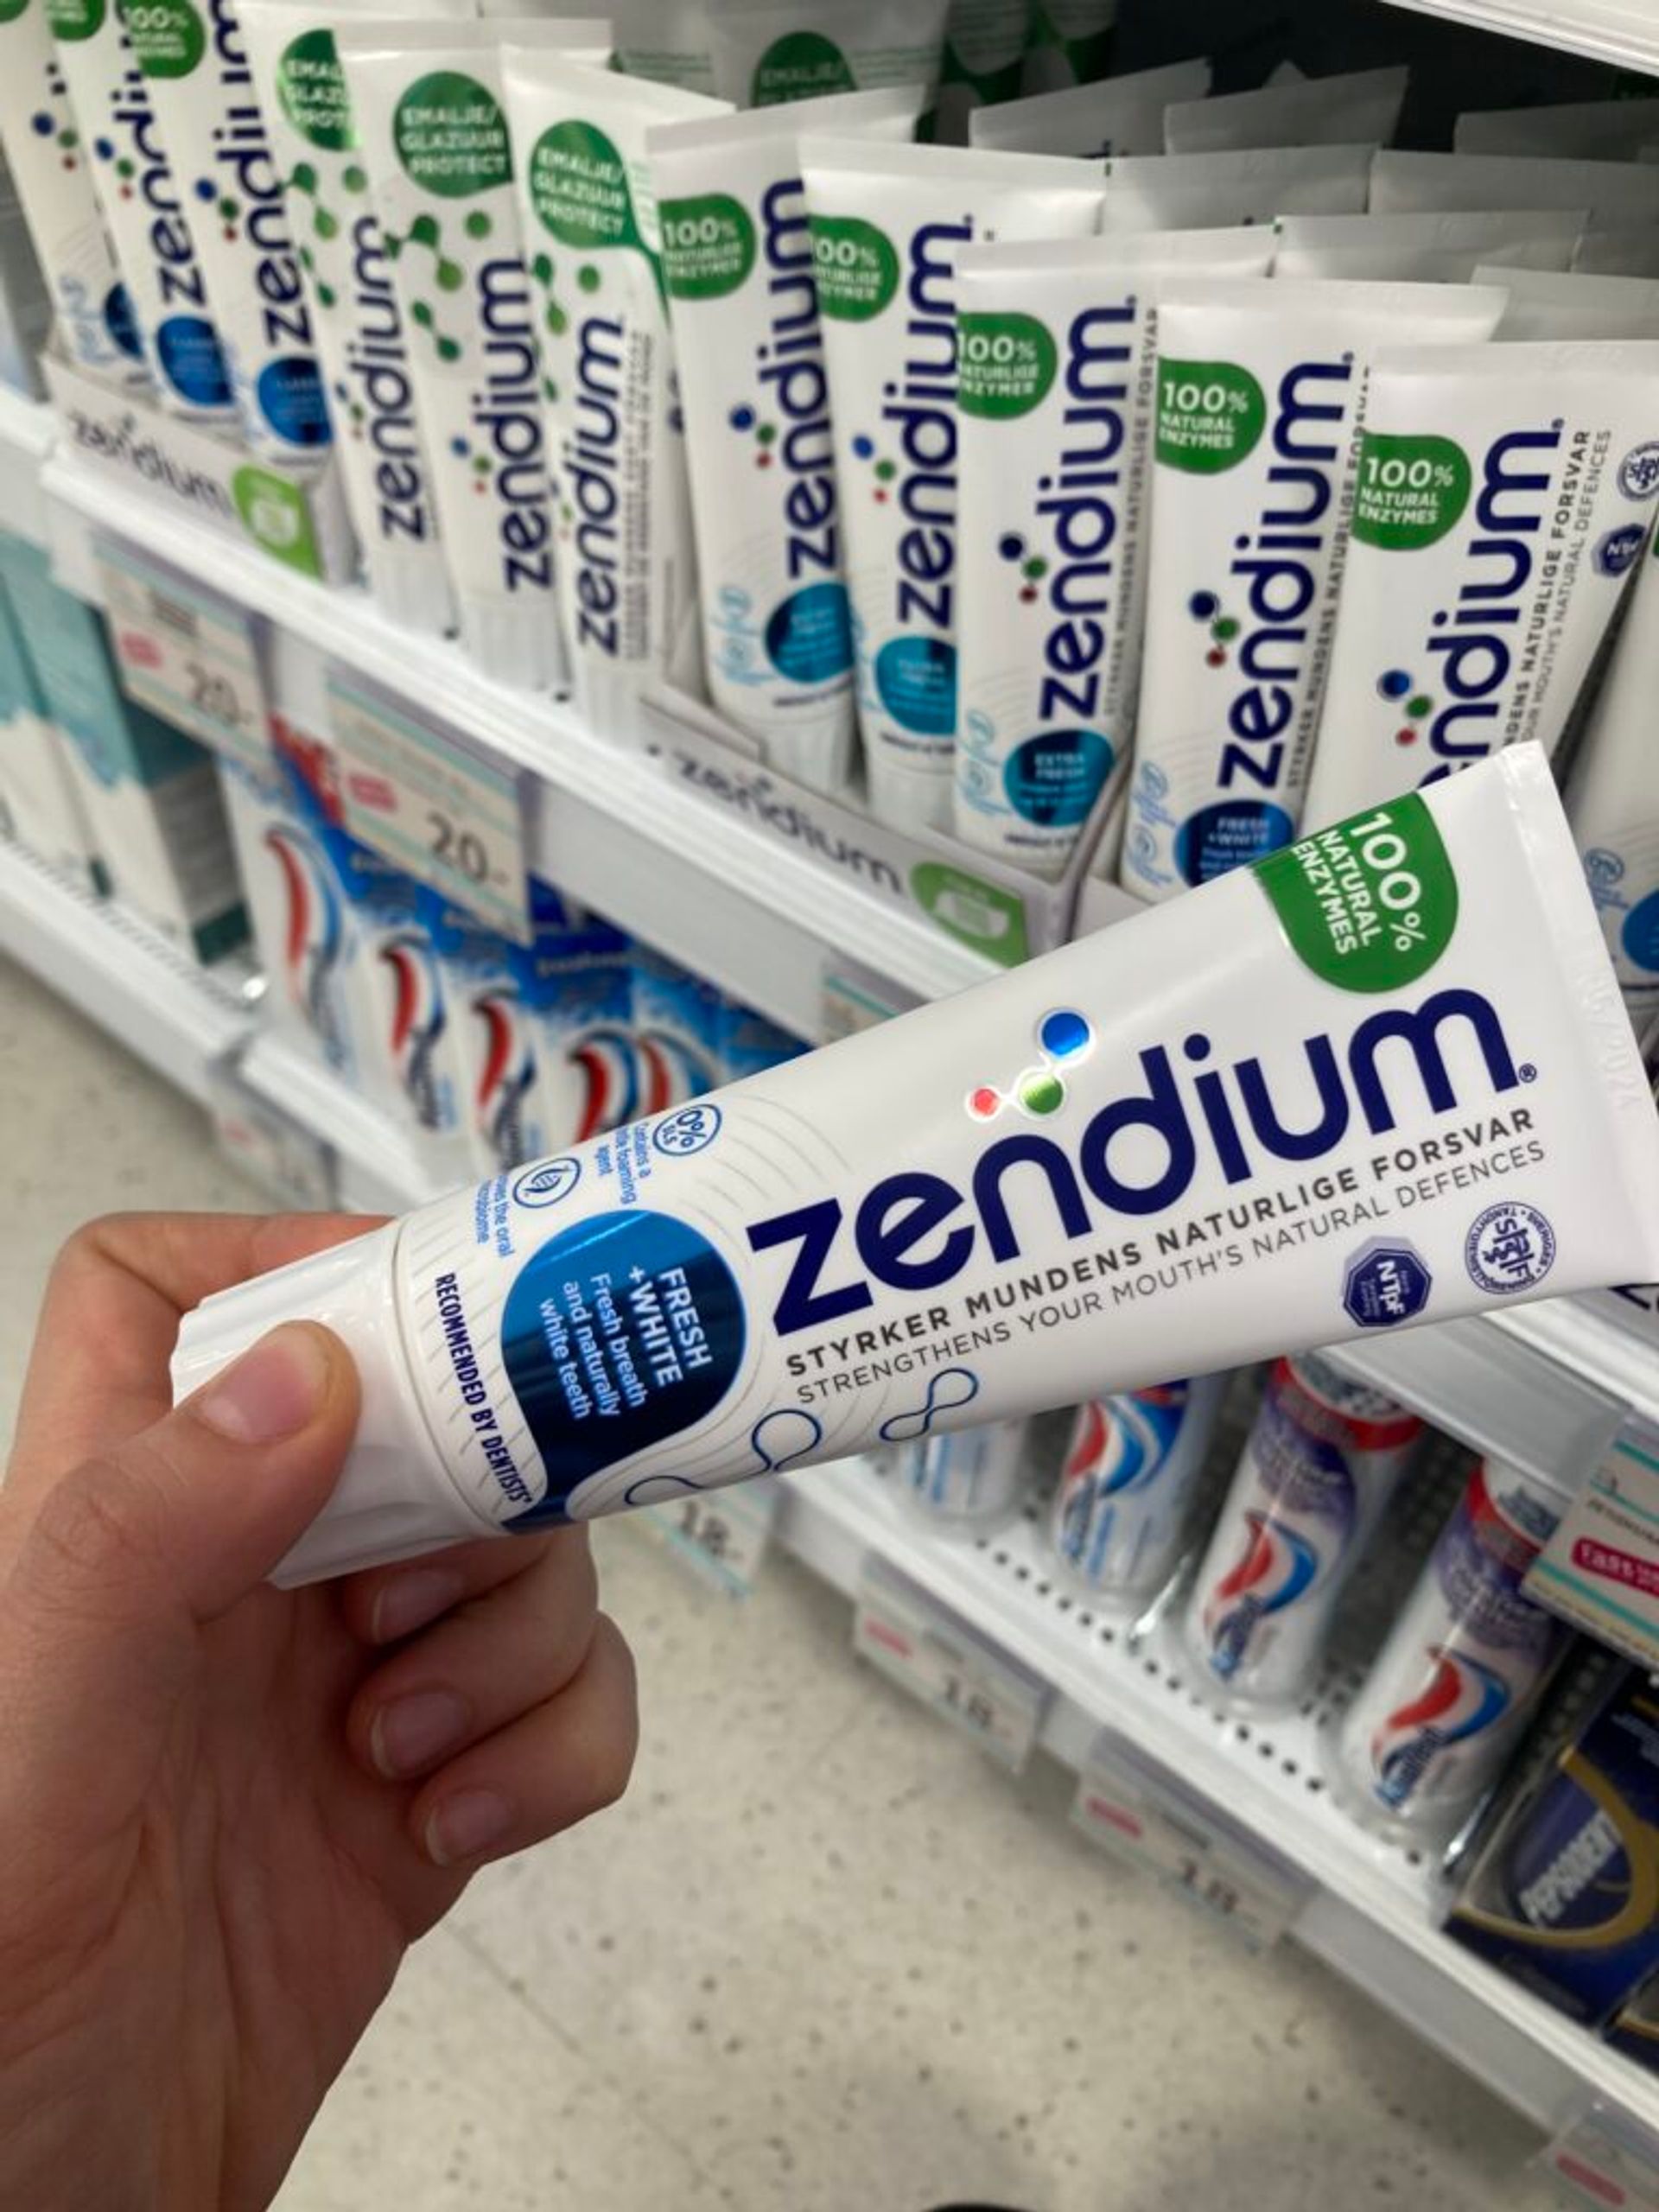 Zendium toothpaste